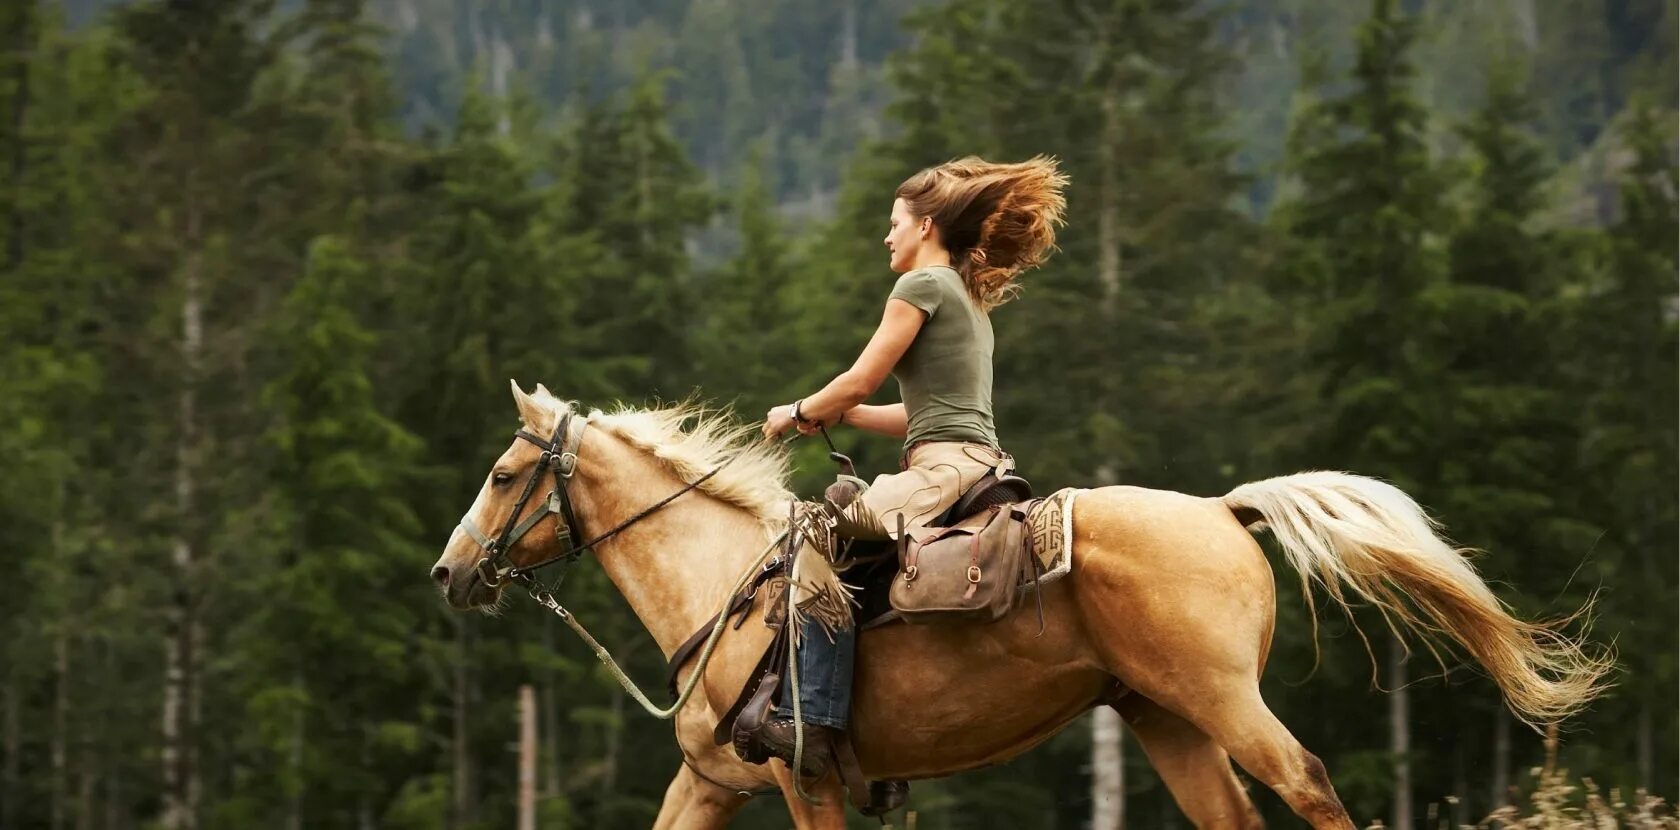 Тряская езда. Верхом на лошади. Скачет на коне. Девушка верхом на лошади. Человек на лошади в горах.